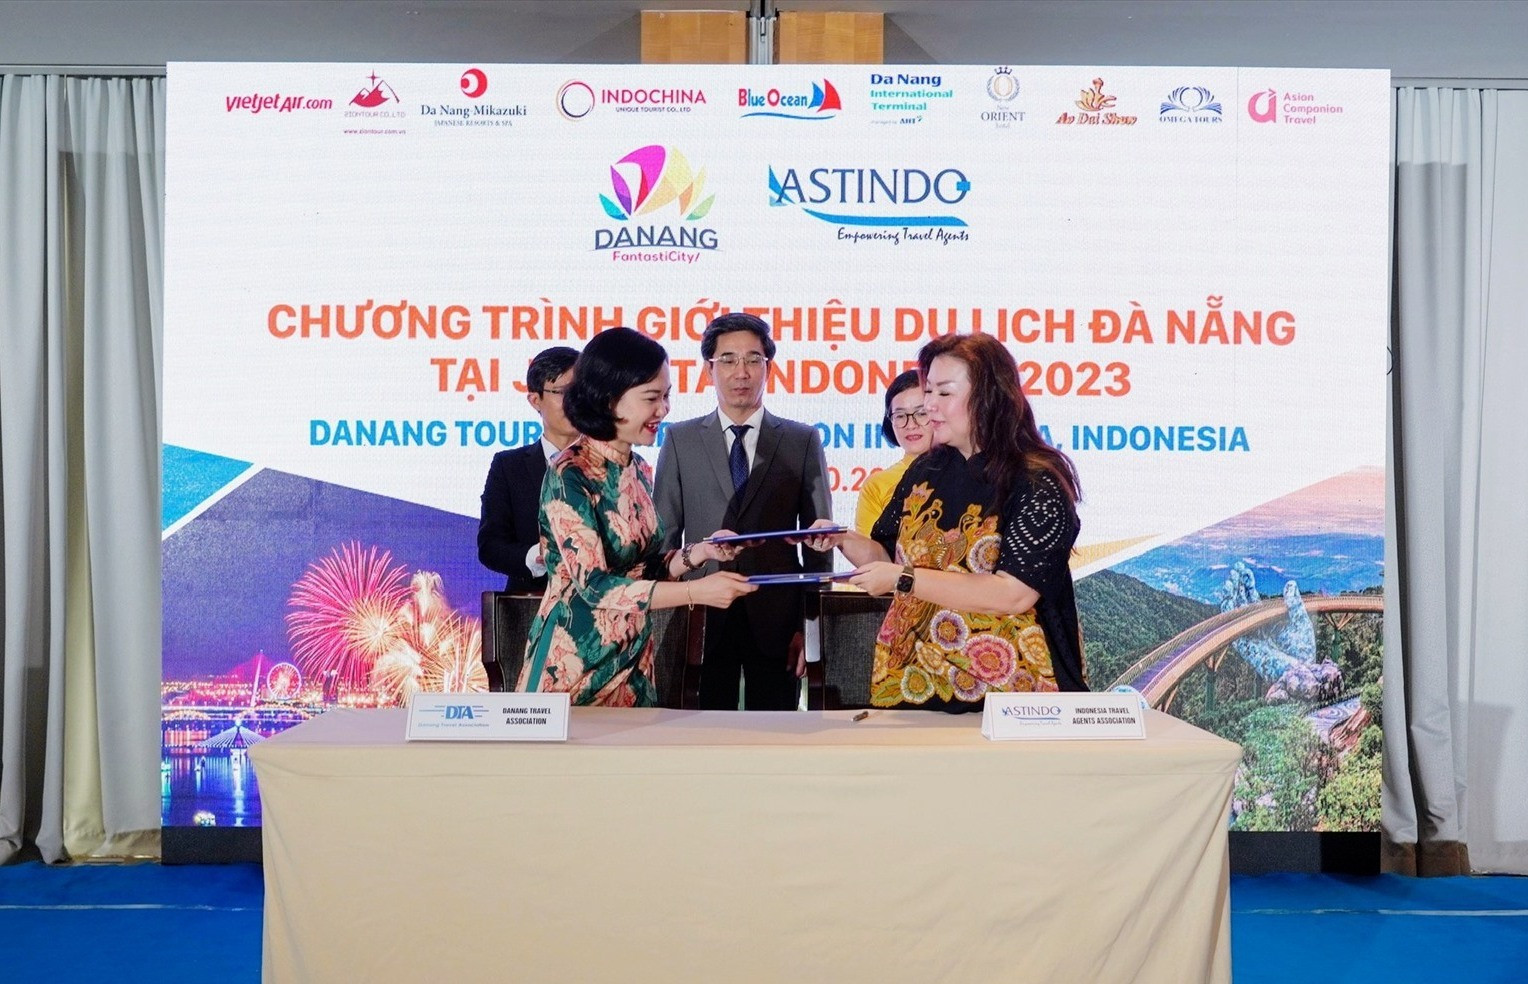 Ký kết hợp tác giữa Hội Lư hành Đà Nẵng và Hiệp hội Lữ hành Indonesia. Ảnh Sở Du lịch Đà Nẵng